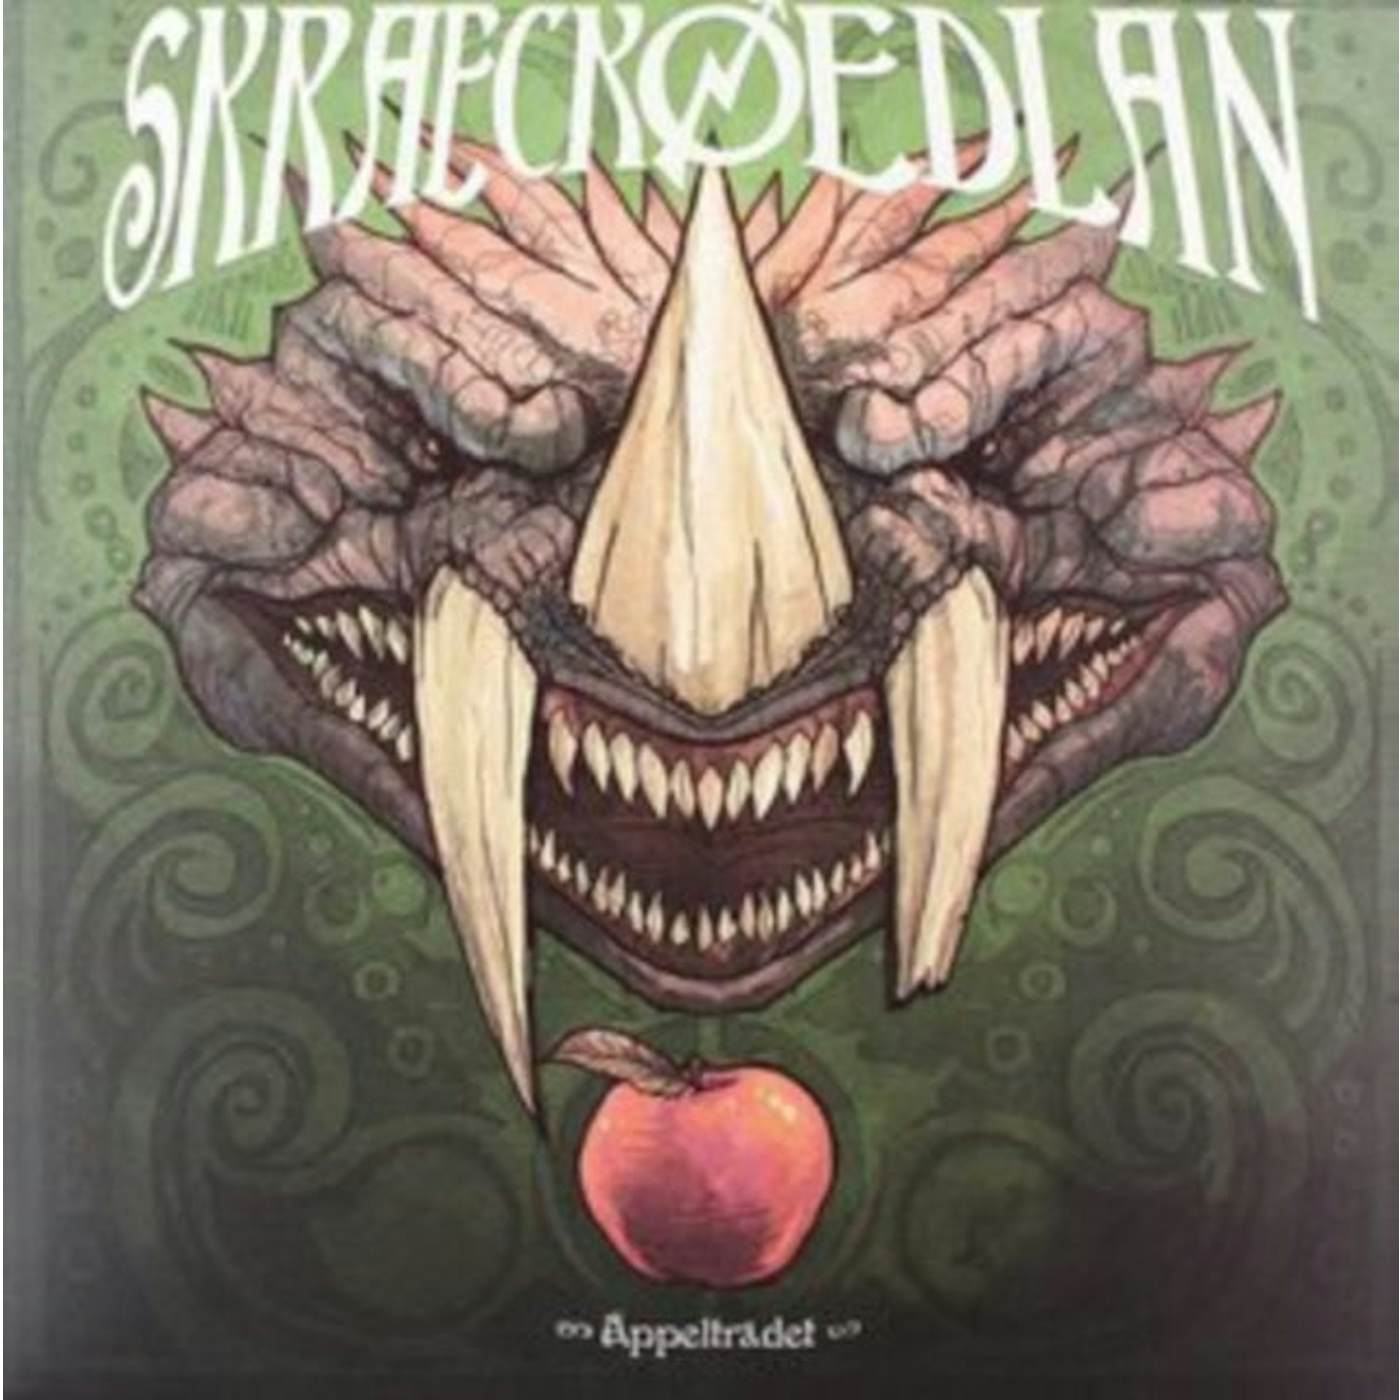 Skraeckoedlan LP - Appeltradet (Vinyl)